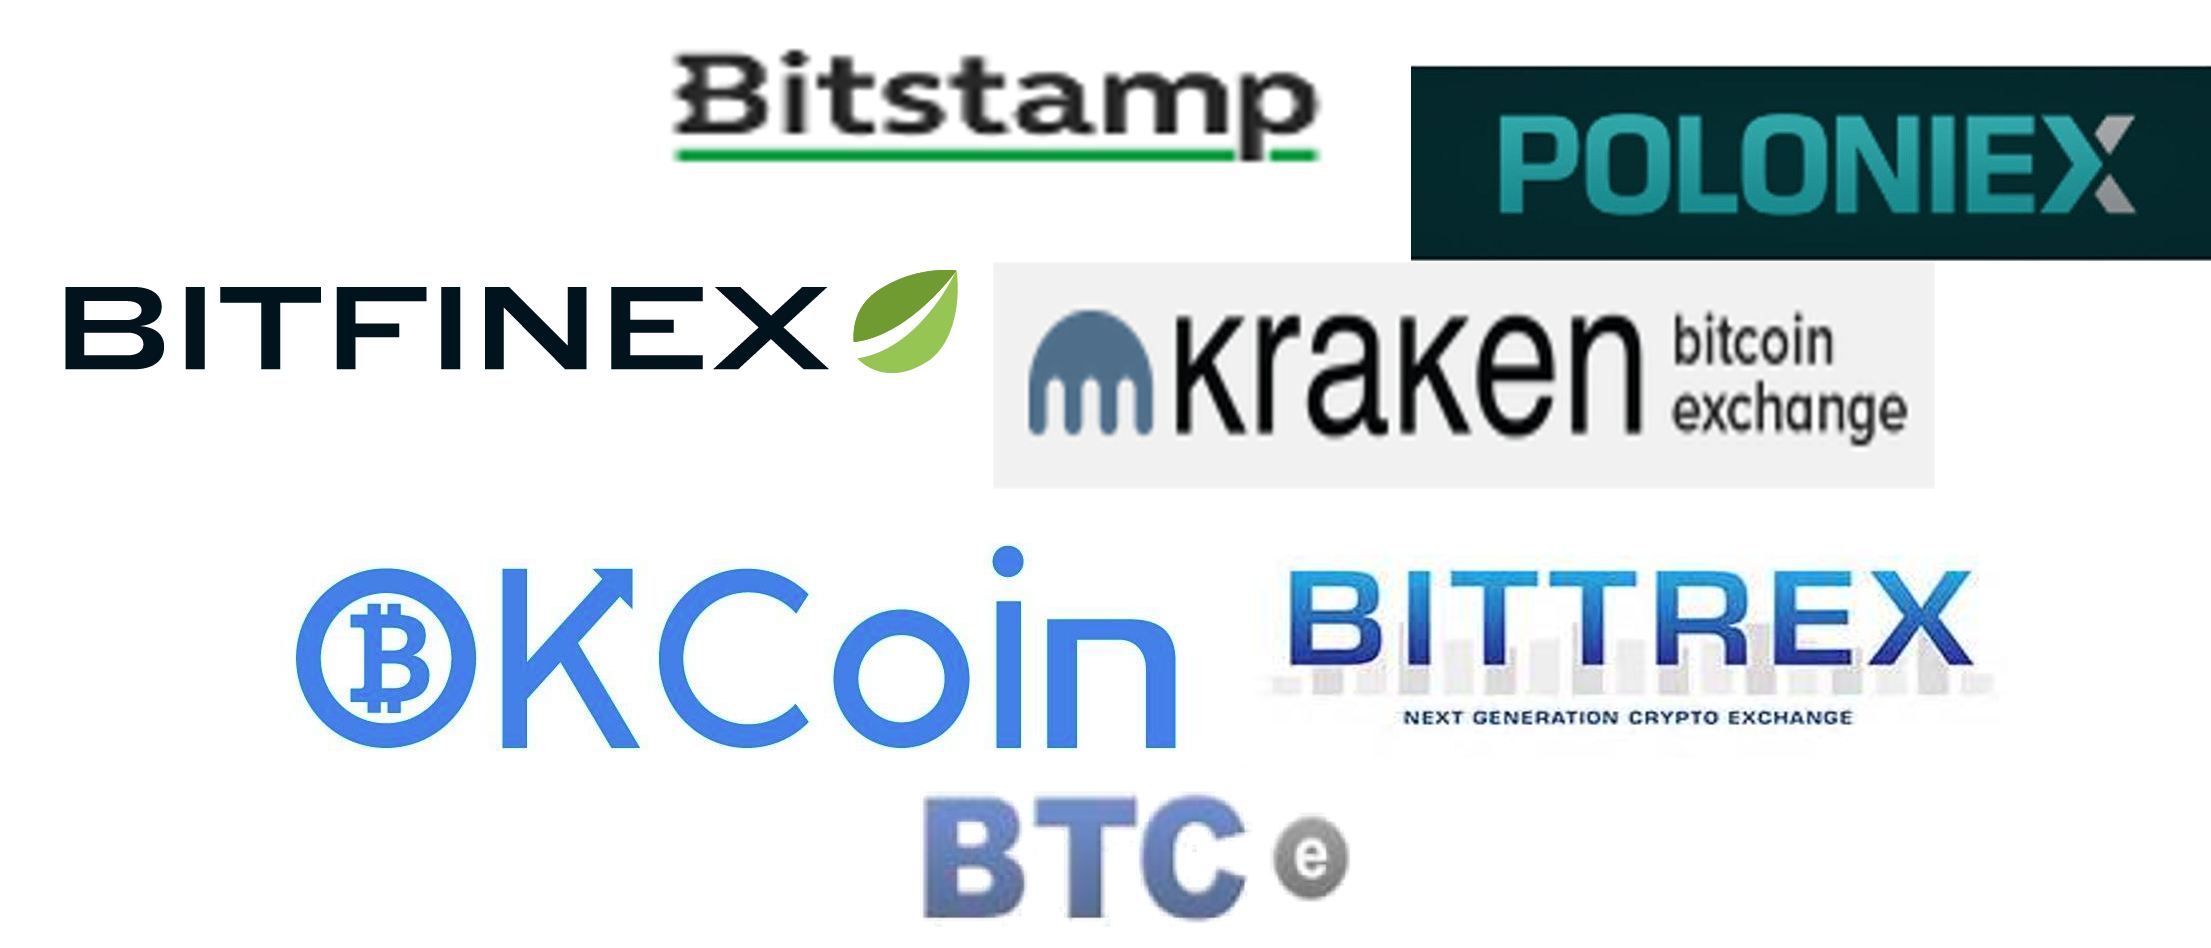 leonardo trading bot bitcointk bitcoin paypal